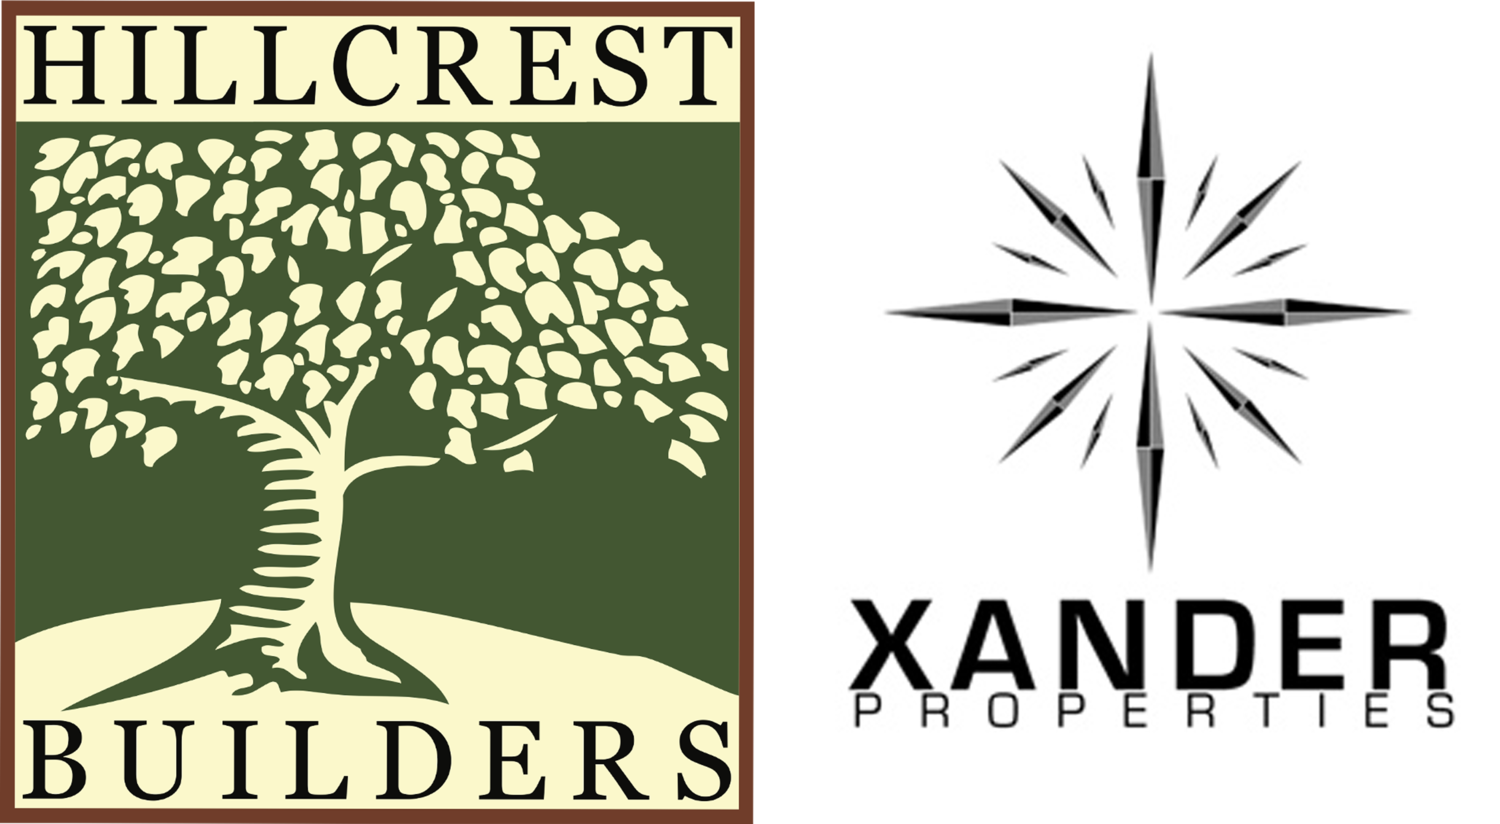 Xander Properties/Hillcrest Builders